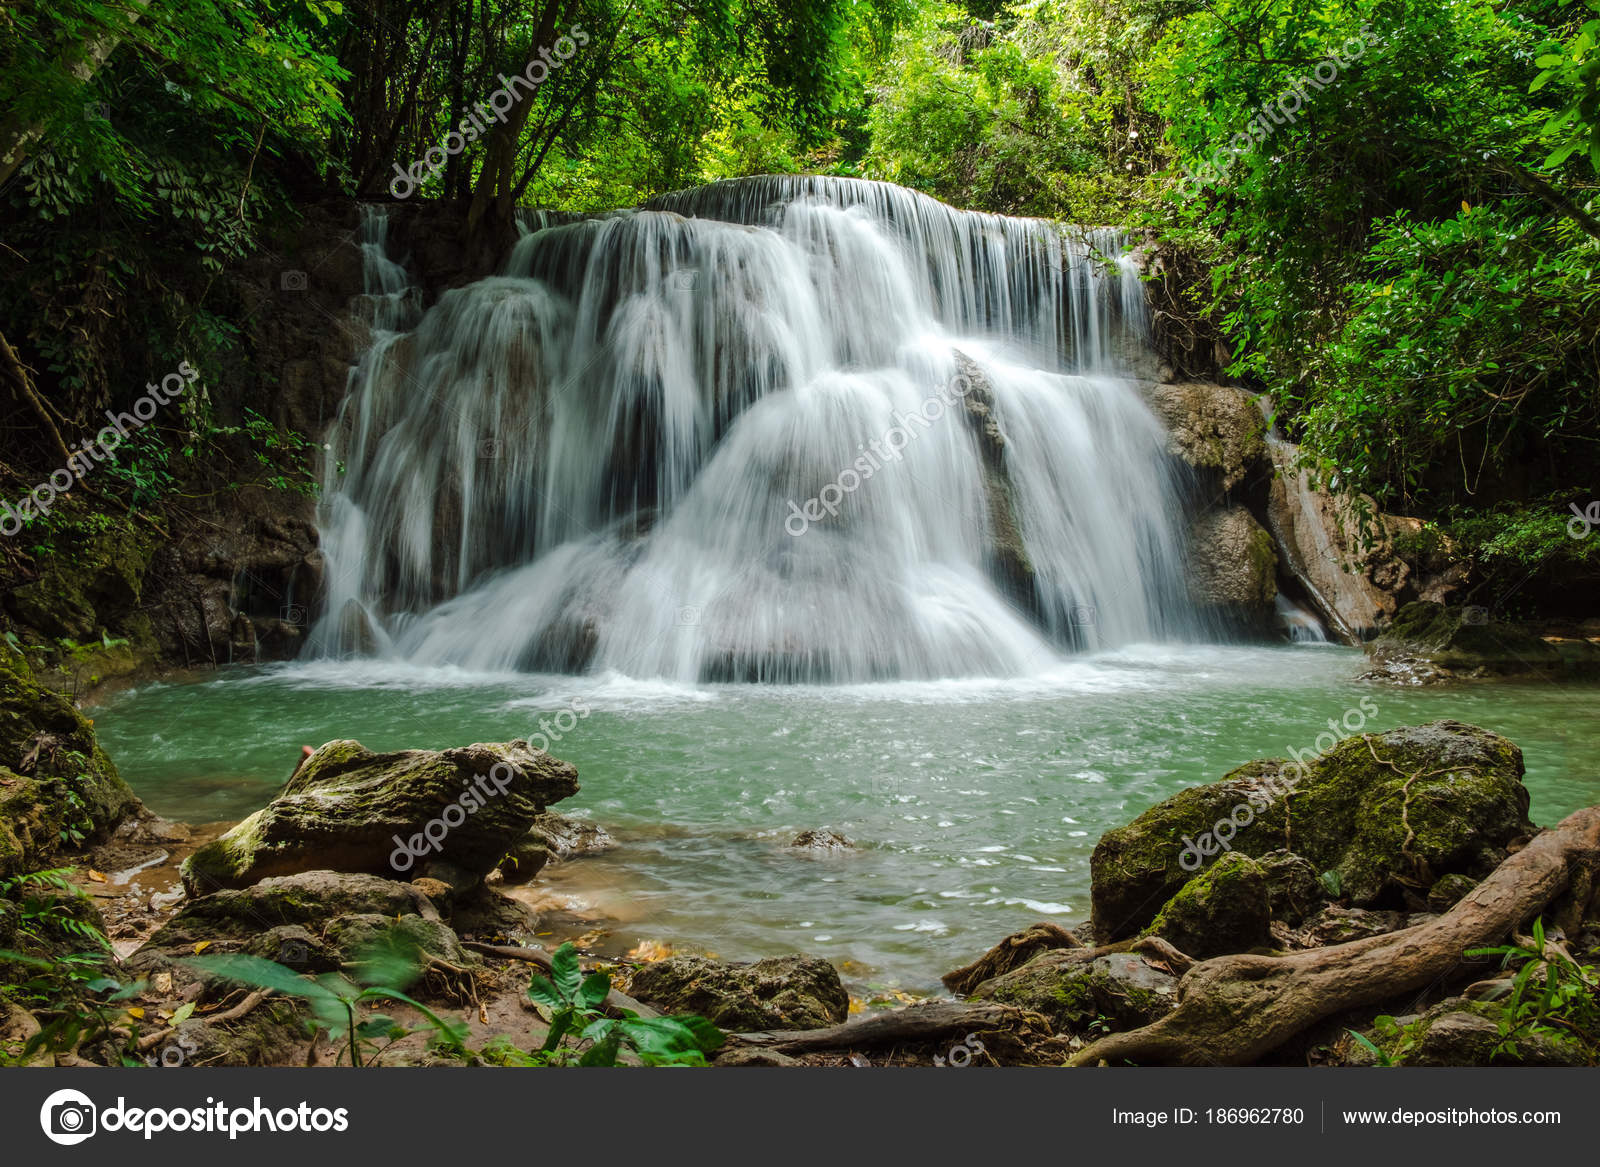 Waterfall Wallpaper Images - Free Download on Freepik